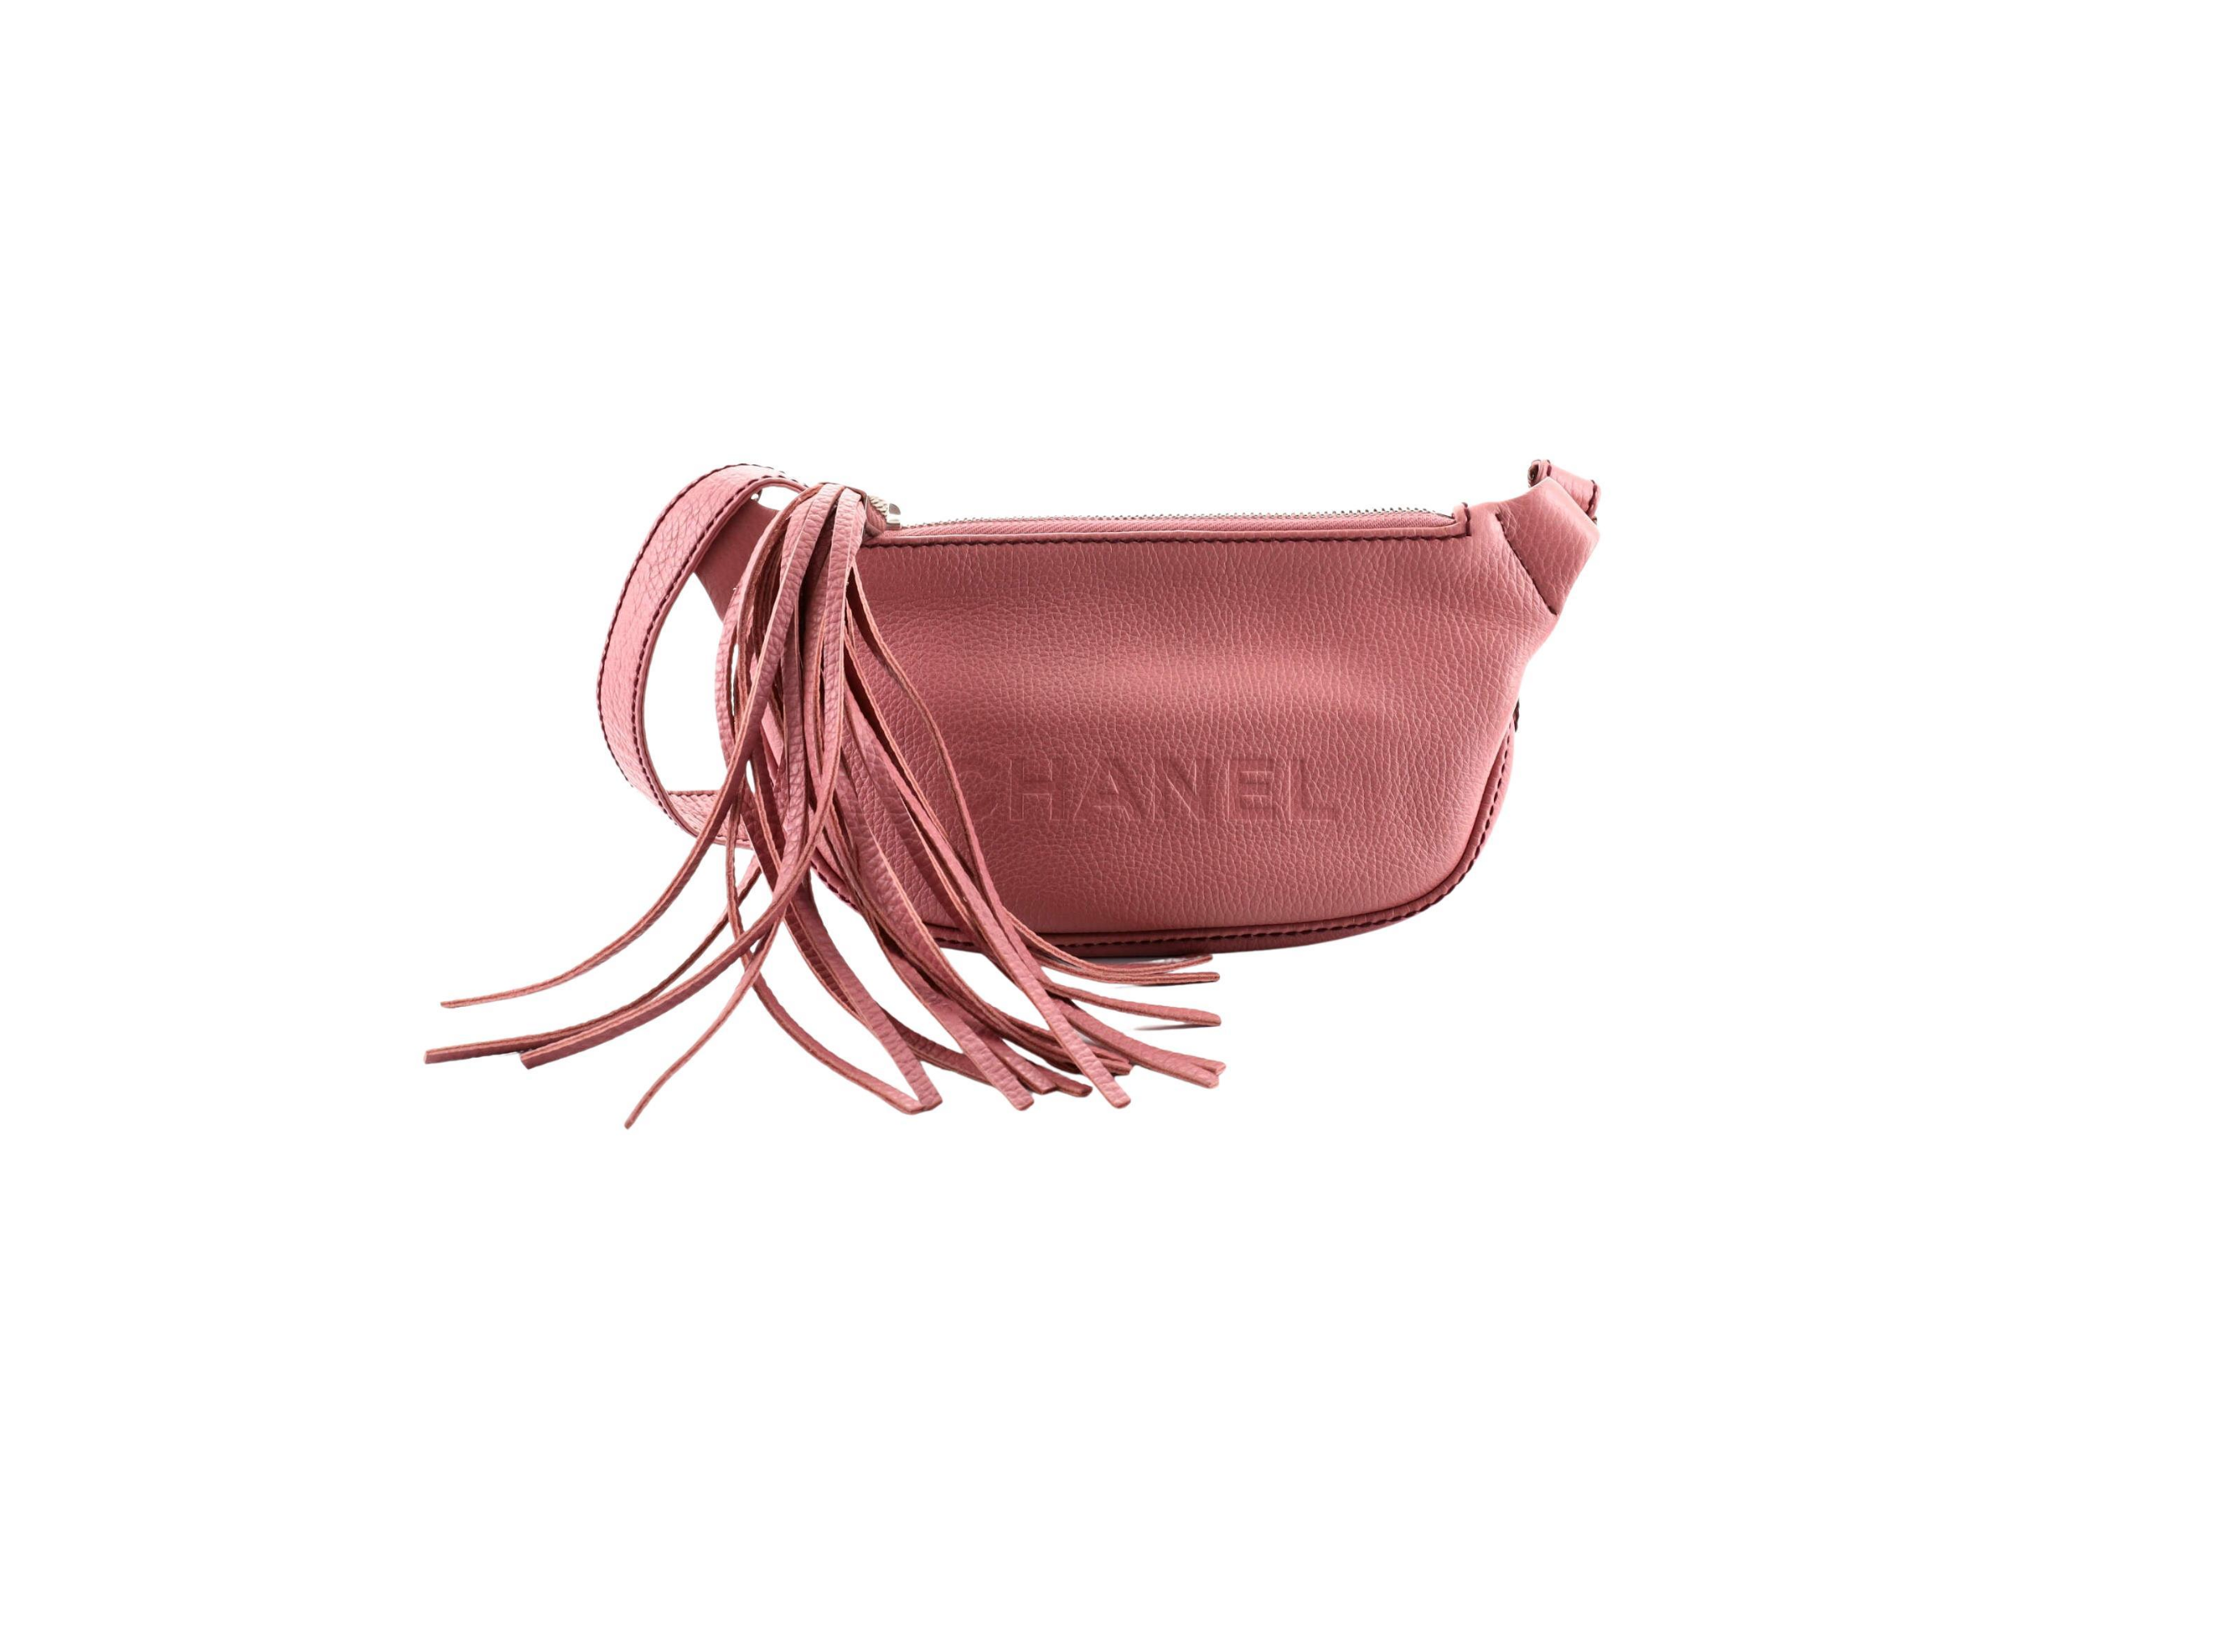 chanel pink crossbody handbag